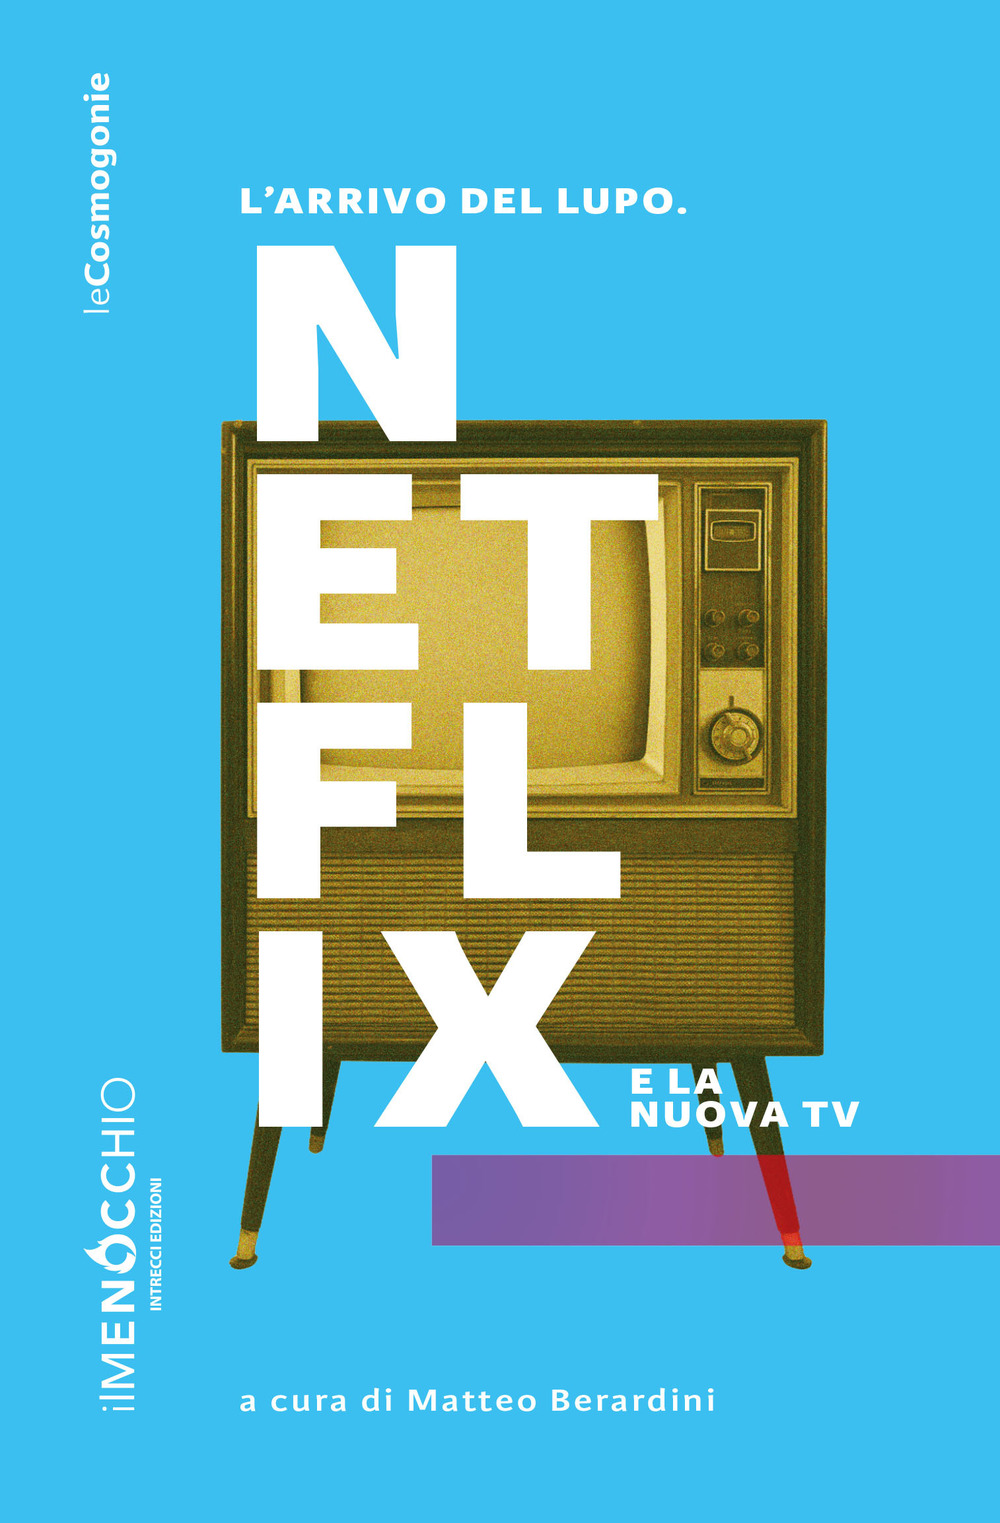 Libri Arrivo Del Lupo. Netflix E La Nuova TV (L') NUOVO SIGILLATO, EDIZIONE DEL 30/03/2019 SUBITO DISPONIBILE